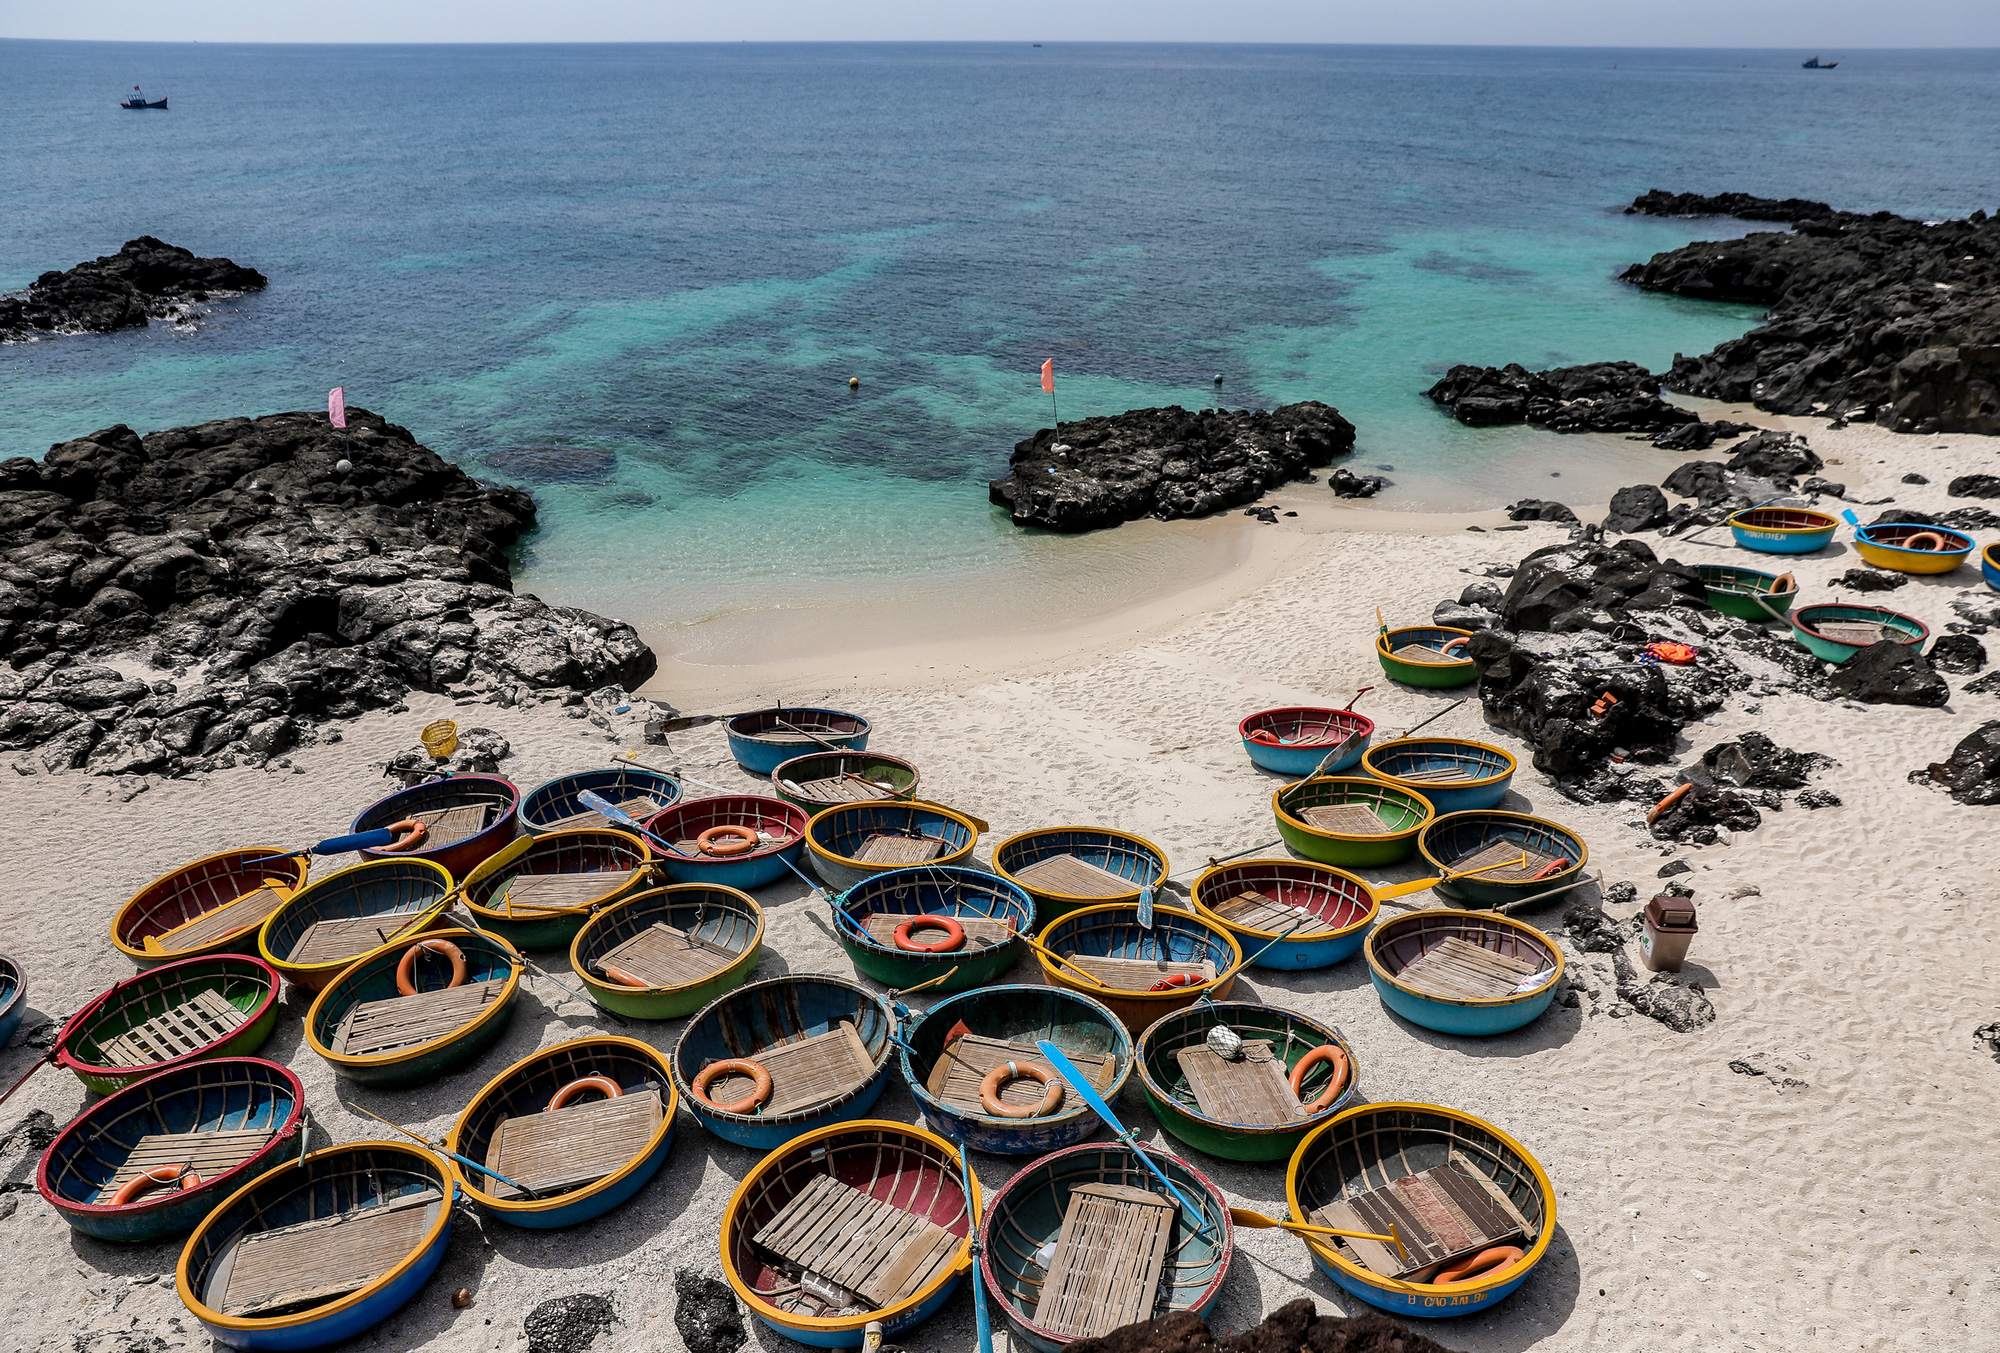 Tổng hợp những hình ảnh đẹp về đảo Lý Sơn - Điểm du lịch không thể bỏ qua  trong năm 2020